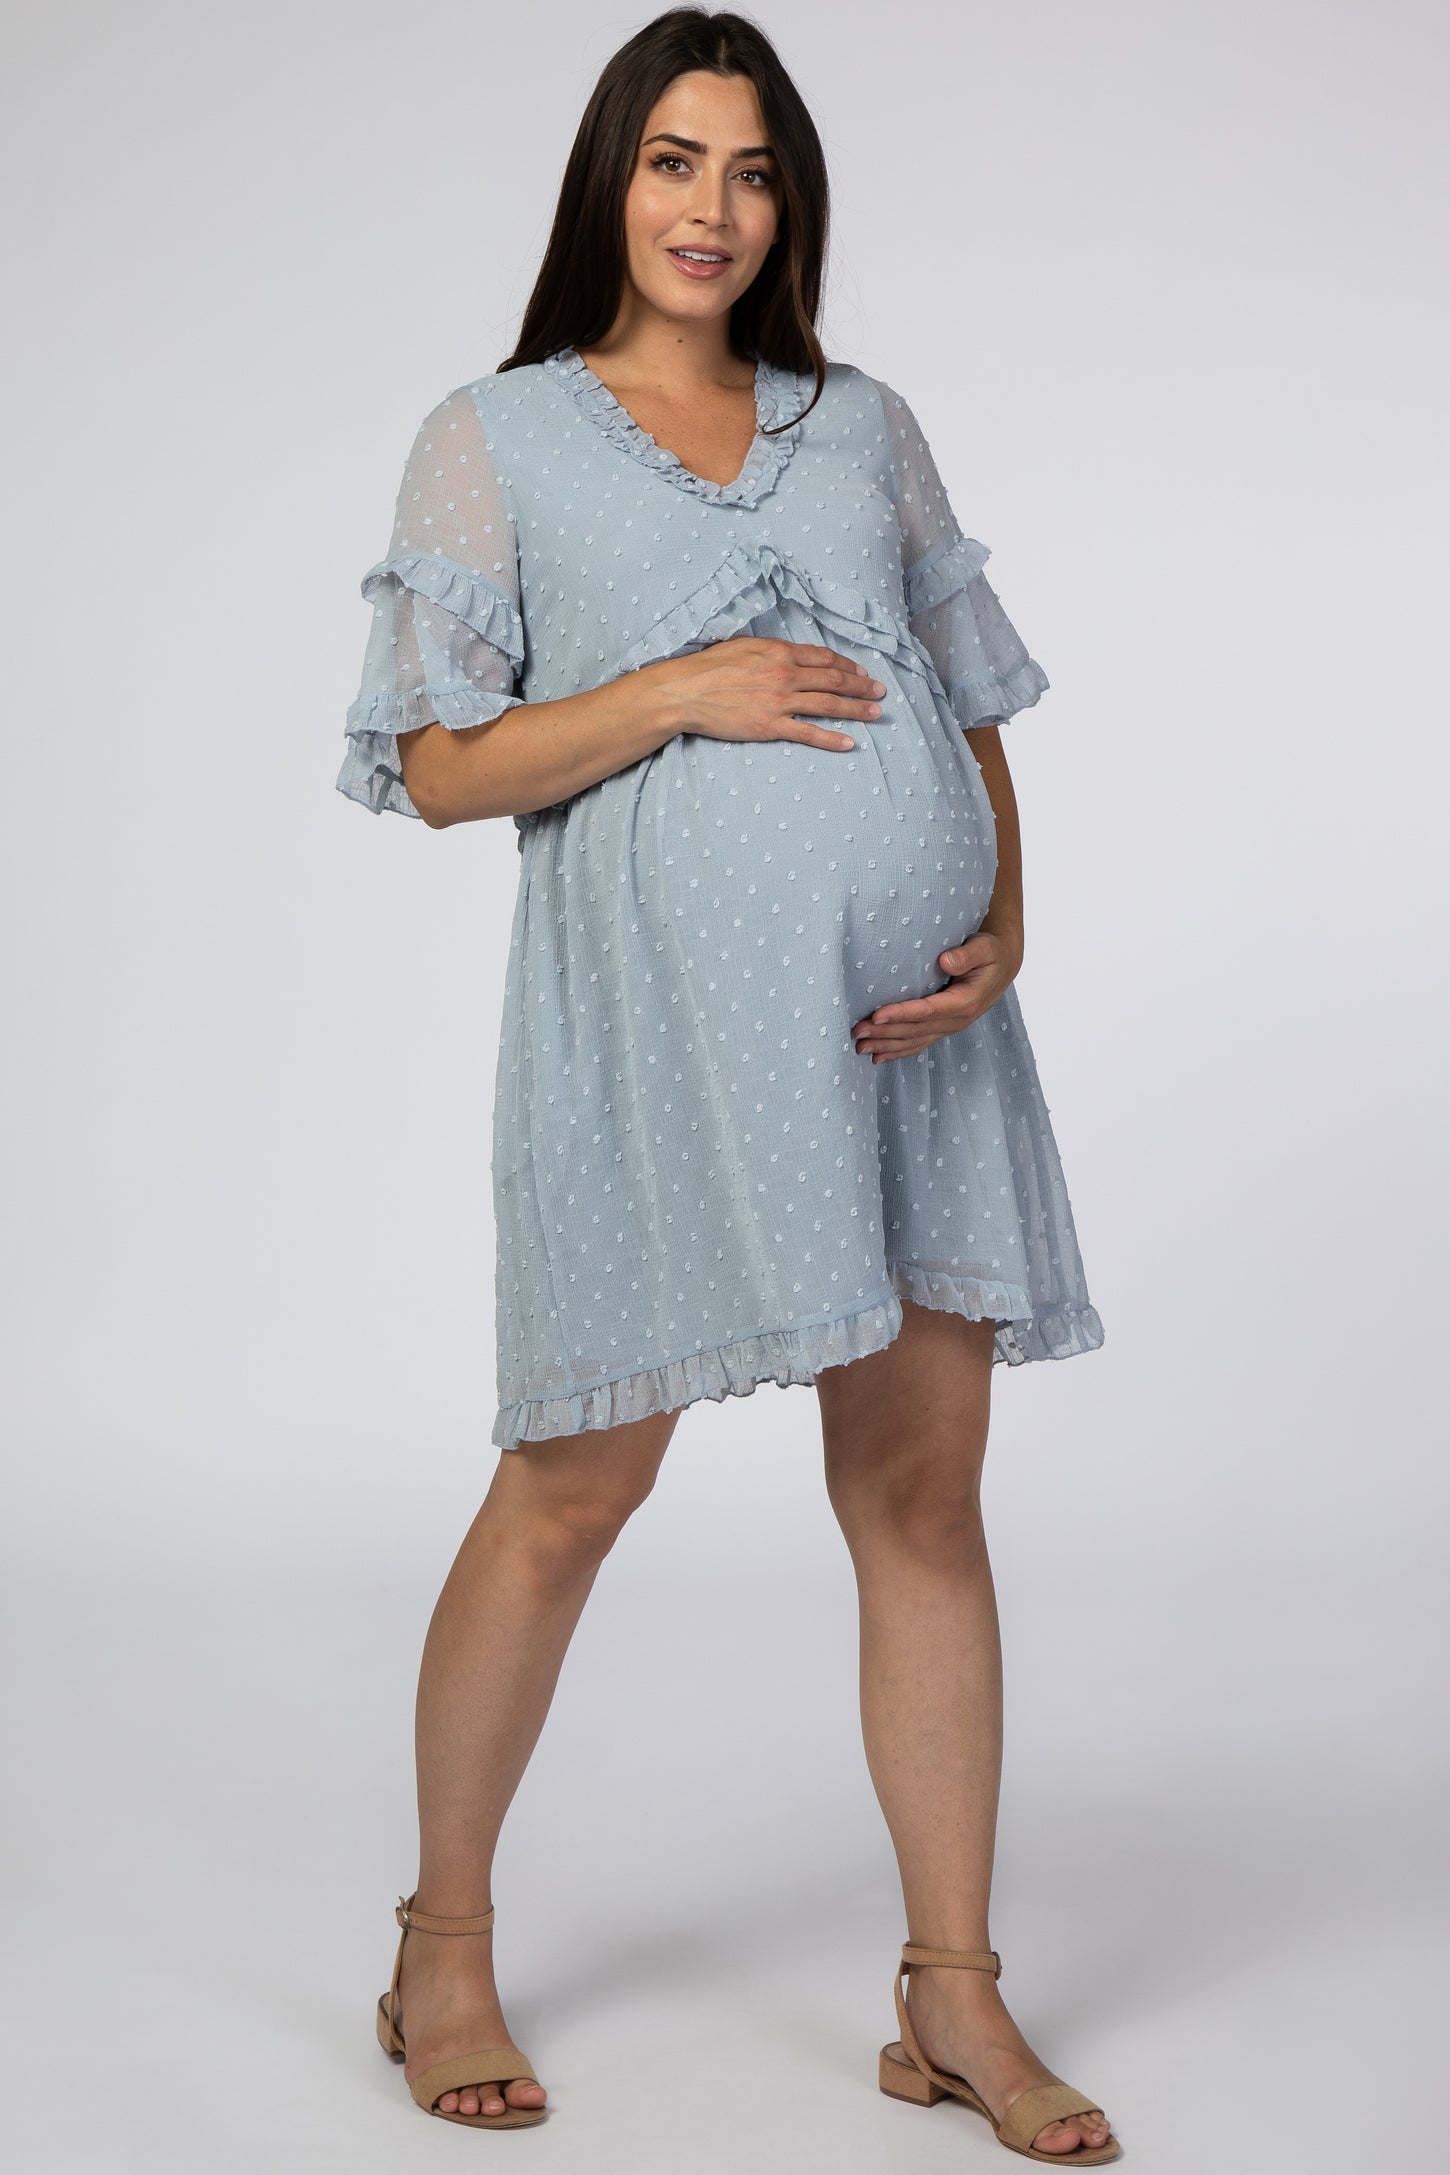 Light Blue Chiffon Swiss Dot Ruffle Maternity Dress